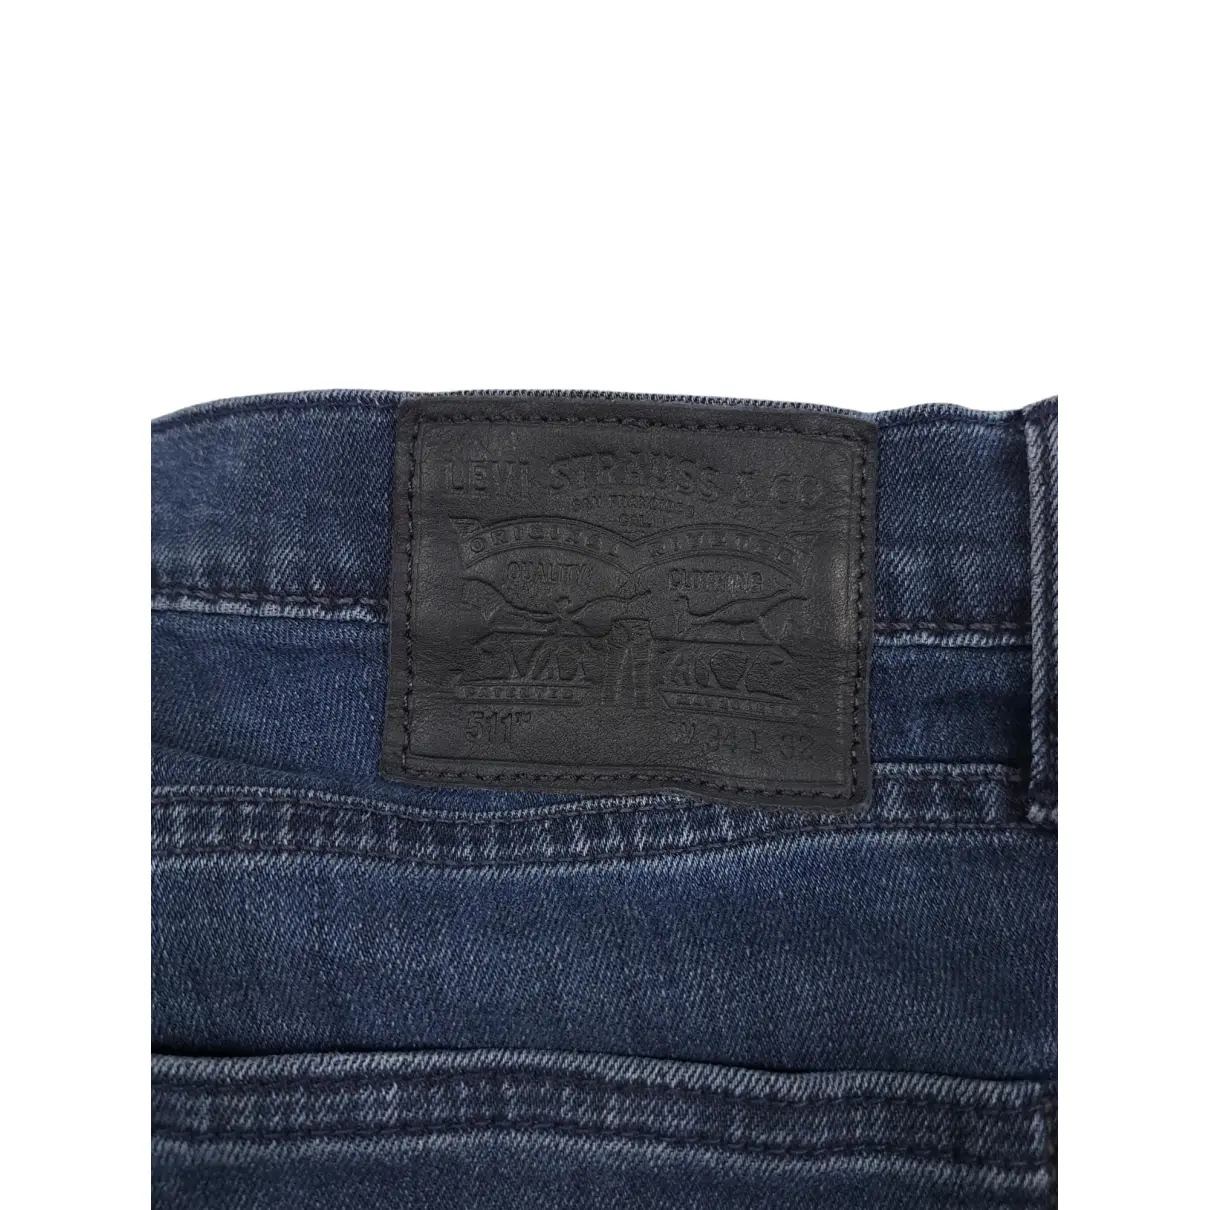 Luxury Levi's Vintage Clothing Jeans Men